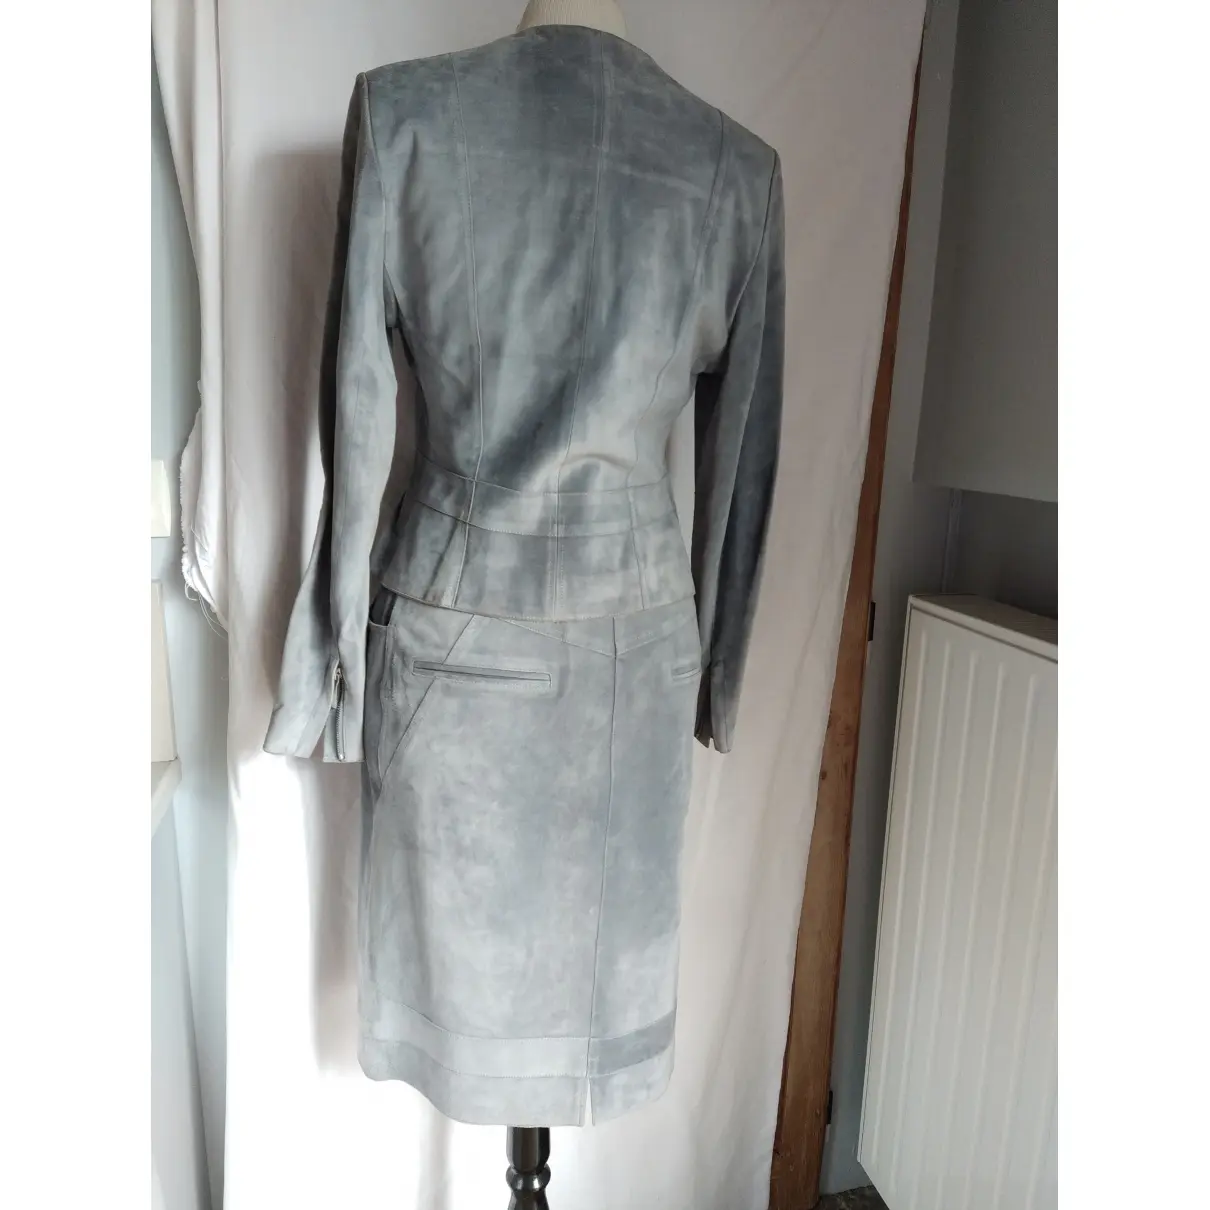 Buy Christian Dior Suit jacket online - Vintage